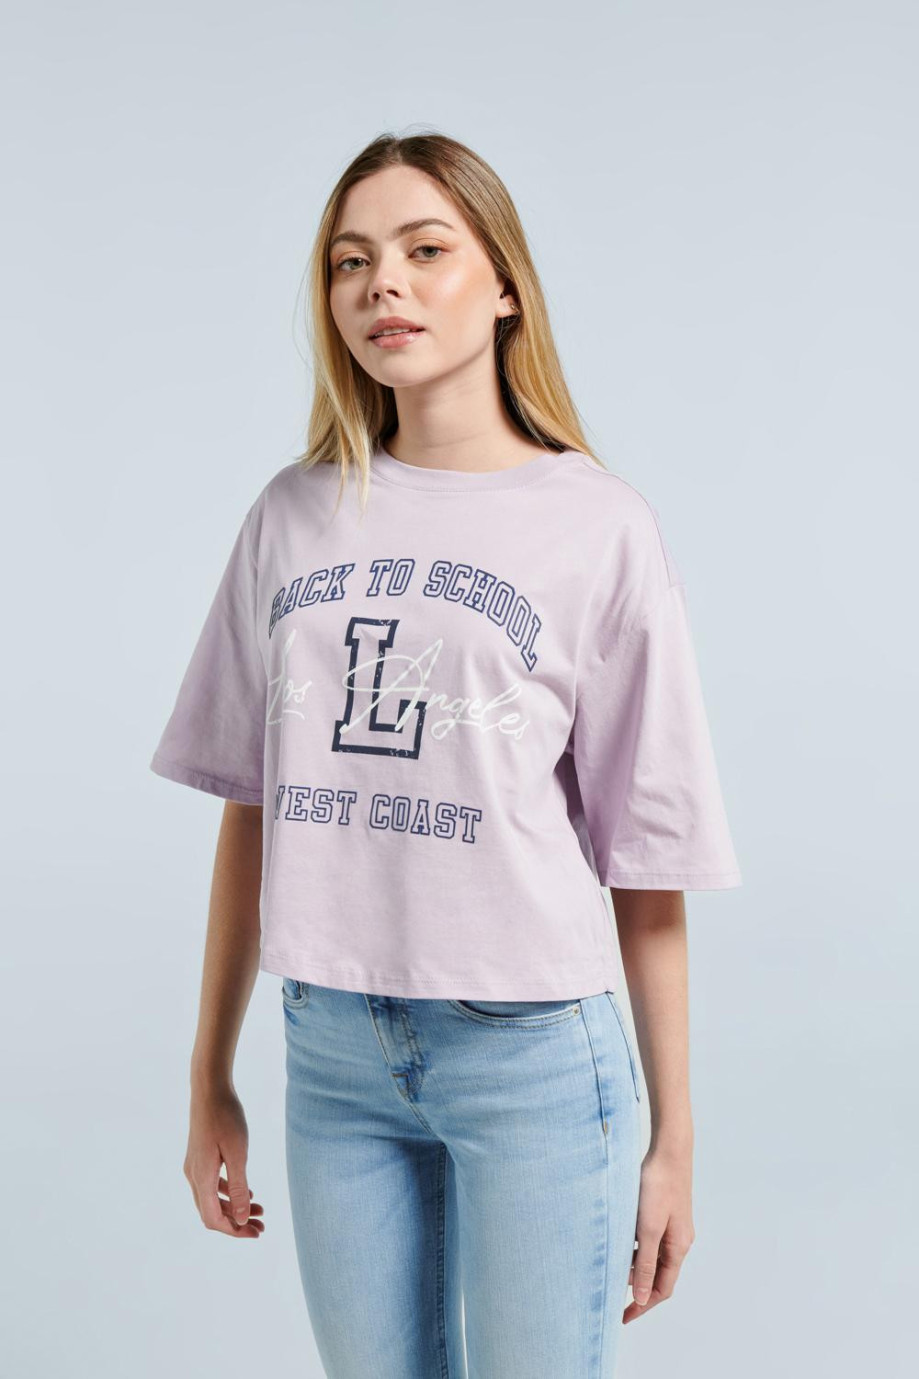 Camiseta lila clara crop top oversize con texto college y cuello redondo